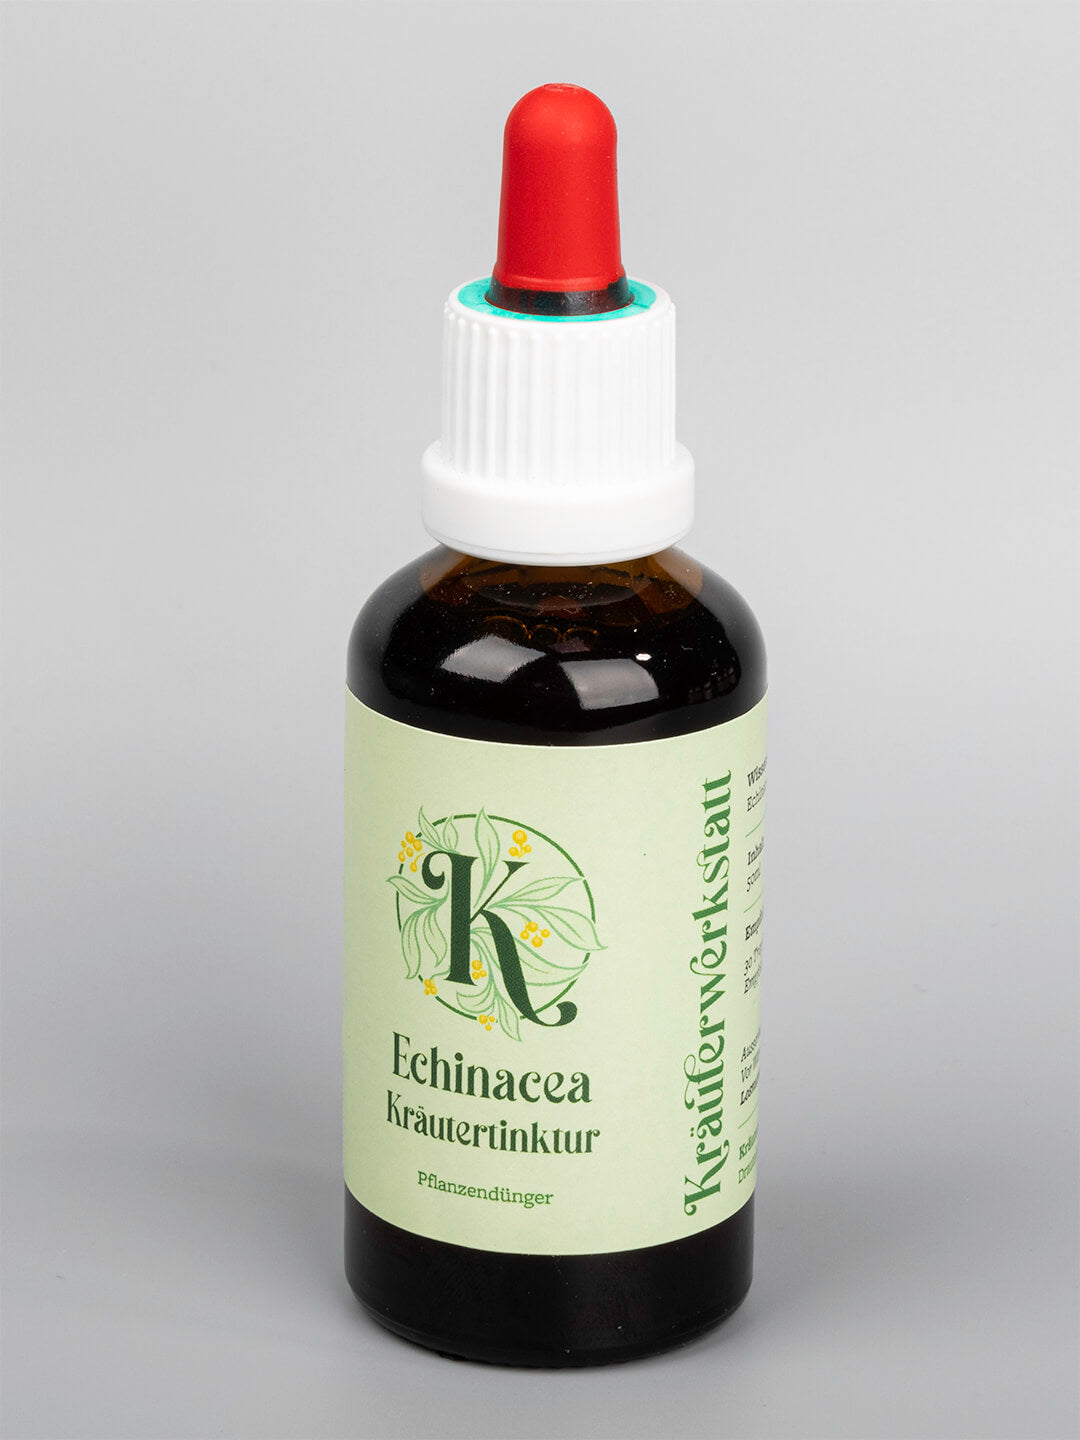 Echinacea Kräutertinktur in 50ml Apothekerflasche